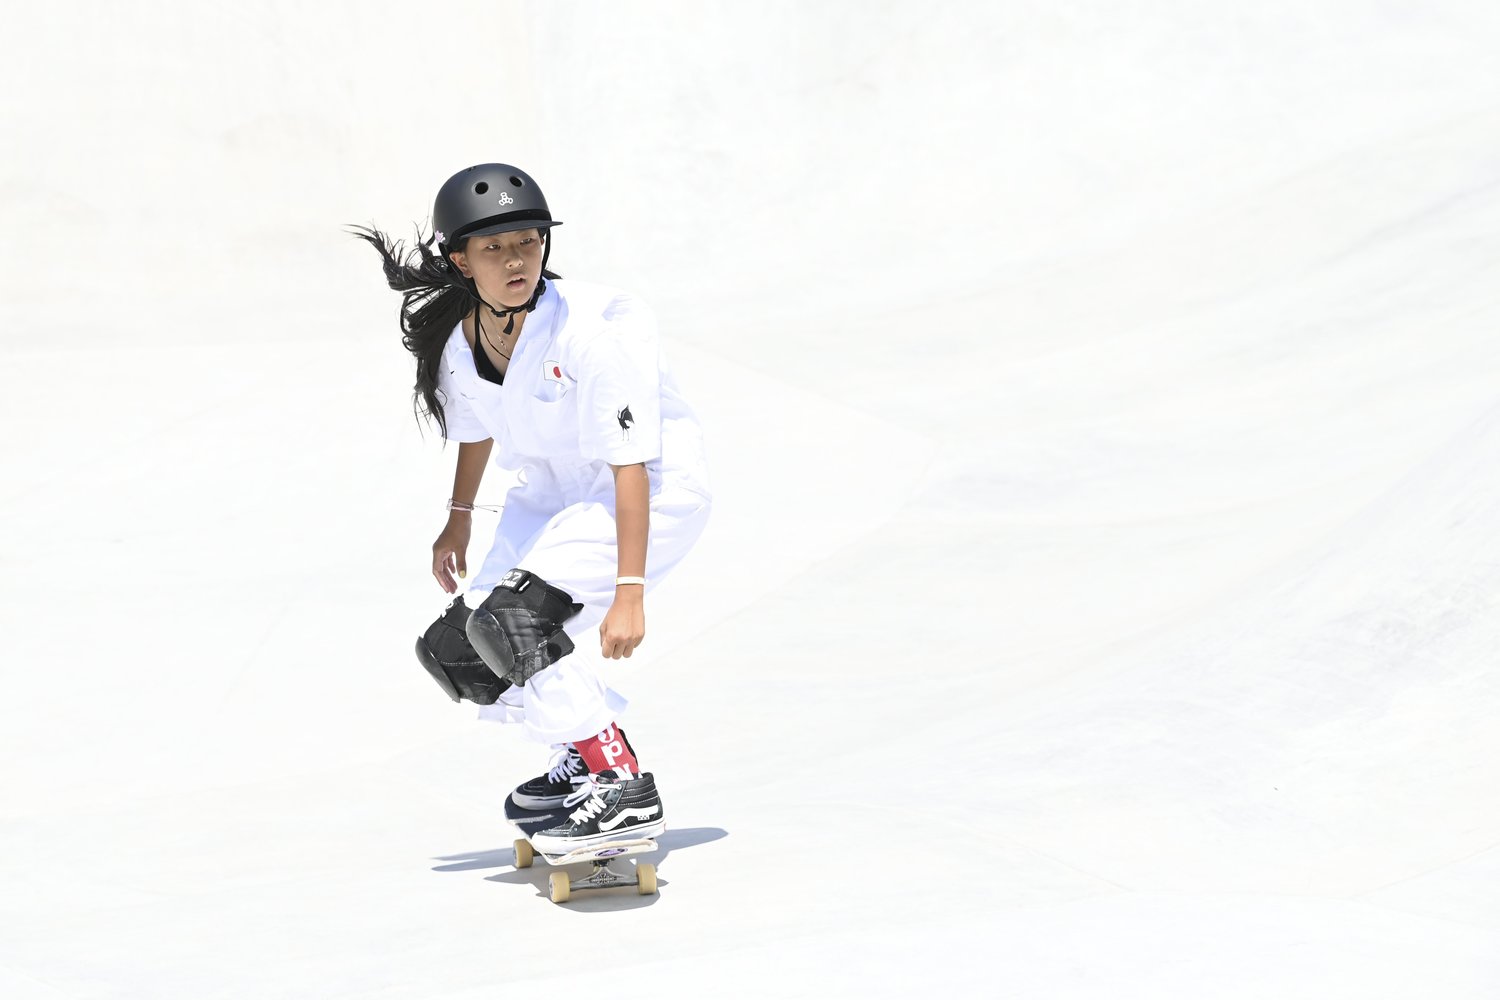 空中戦で勝負せずに銀メダル 世界でかっこいいスケーターに 12歳開心那 プロスケーターも驚く 2つの凄さ スケートボード Number Web ナンバー